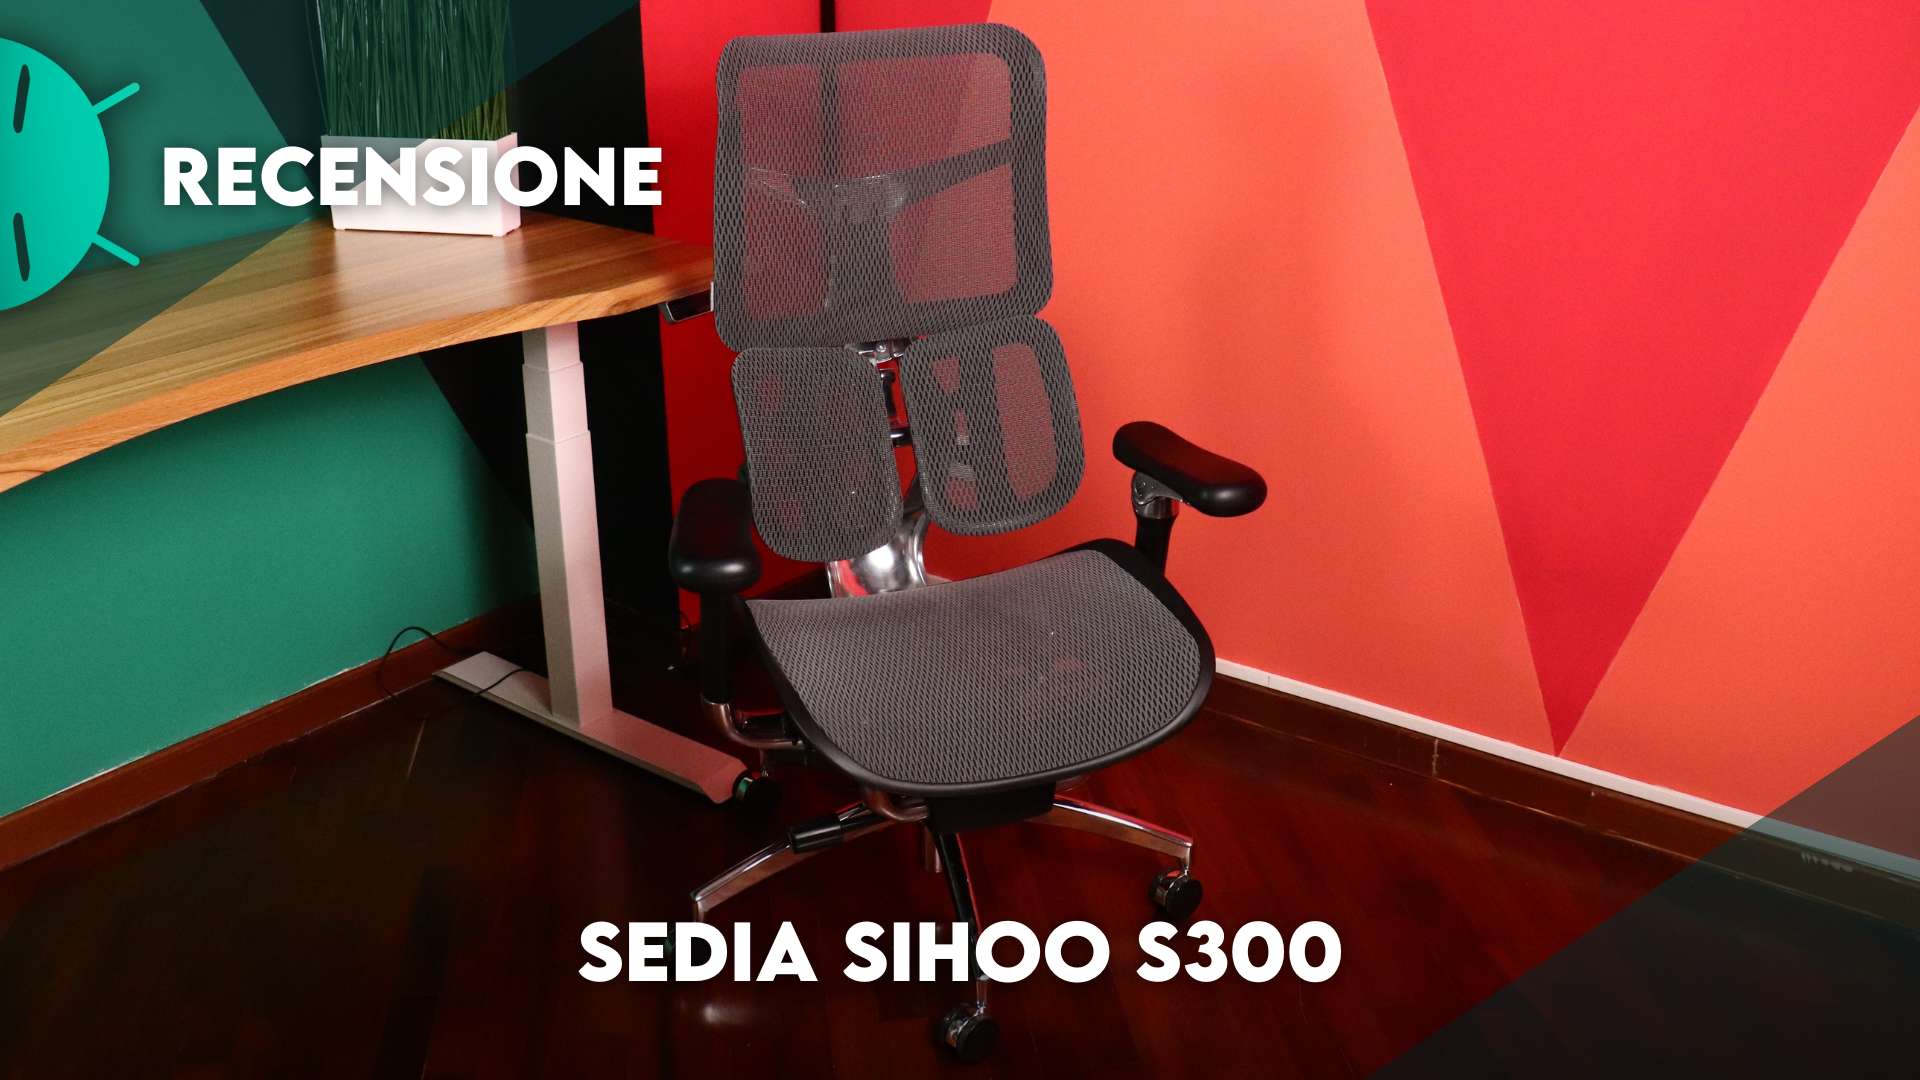 Recensione Sihoo S300: la sedia da ufficio ergonomica con meccanismo  anti-gravità 